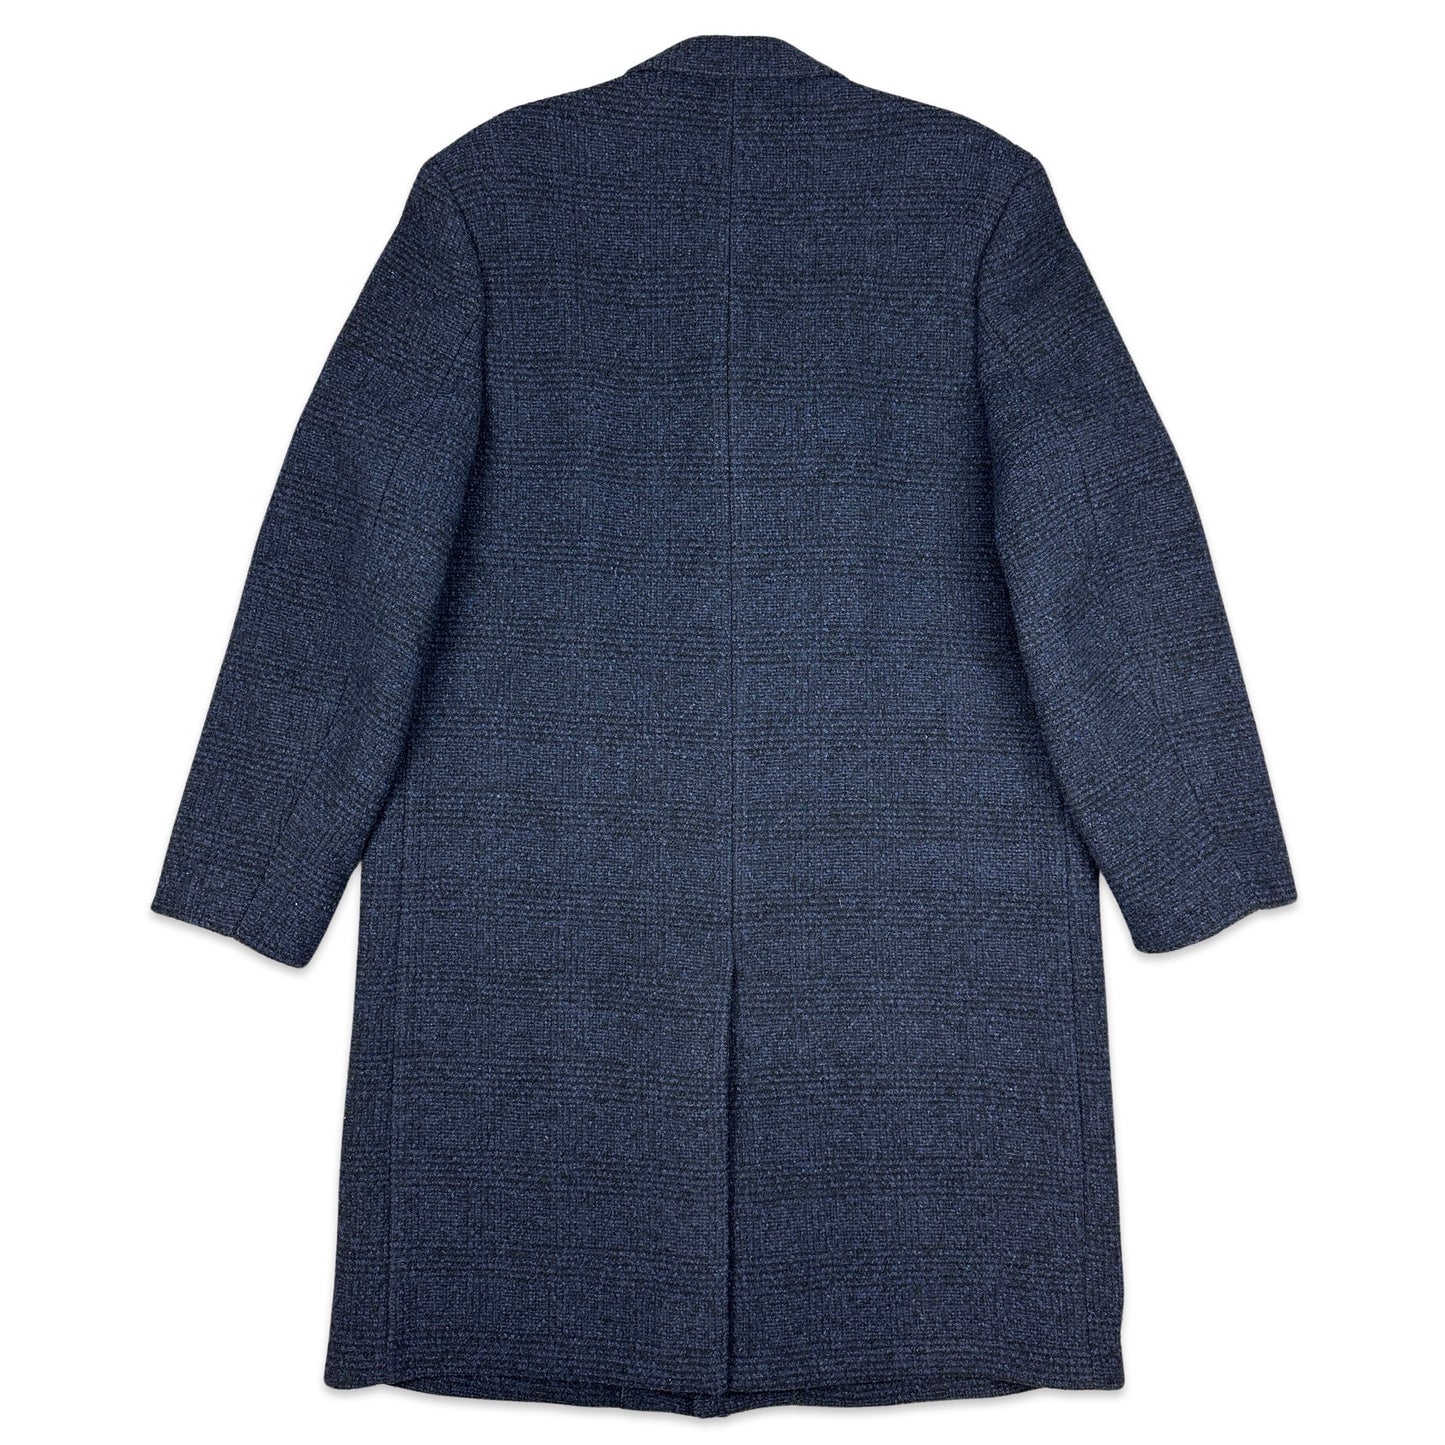 90s Vintage Blue Tweed Check Wool Duster Coat XL